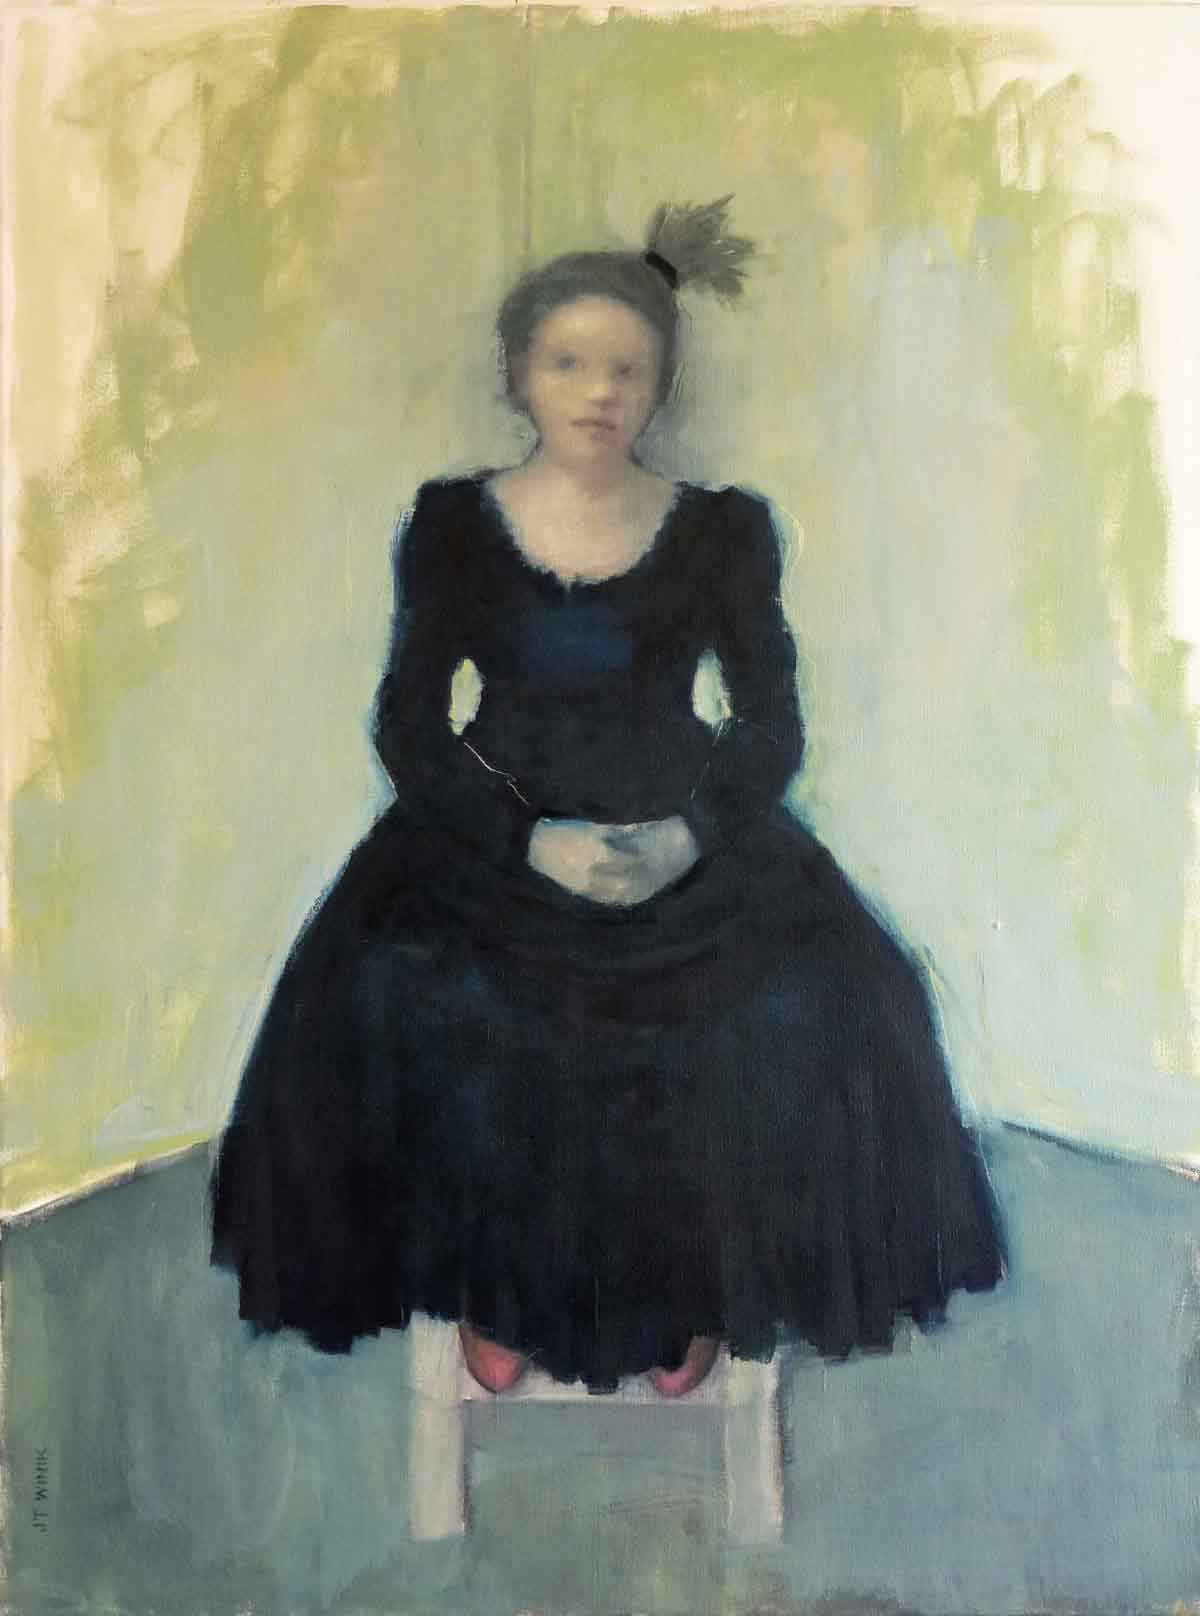 Black Dress, Green Wa... by  J.T. Winik - Masterpiece Online